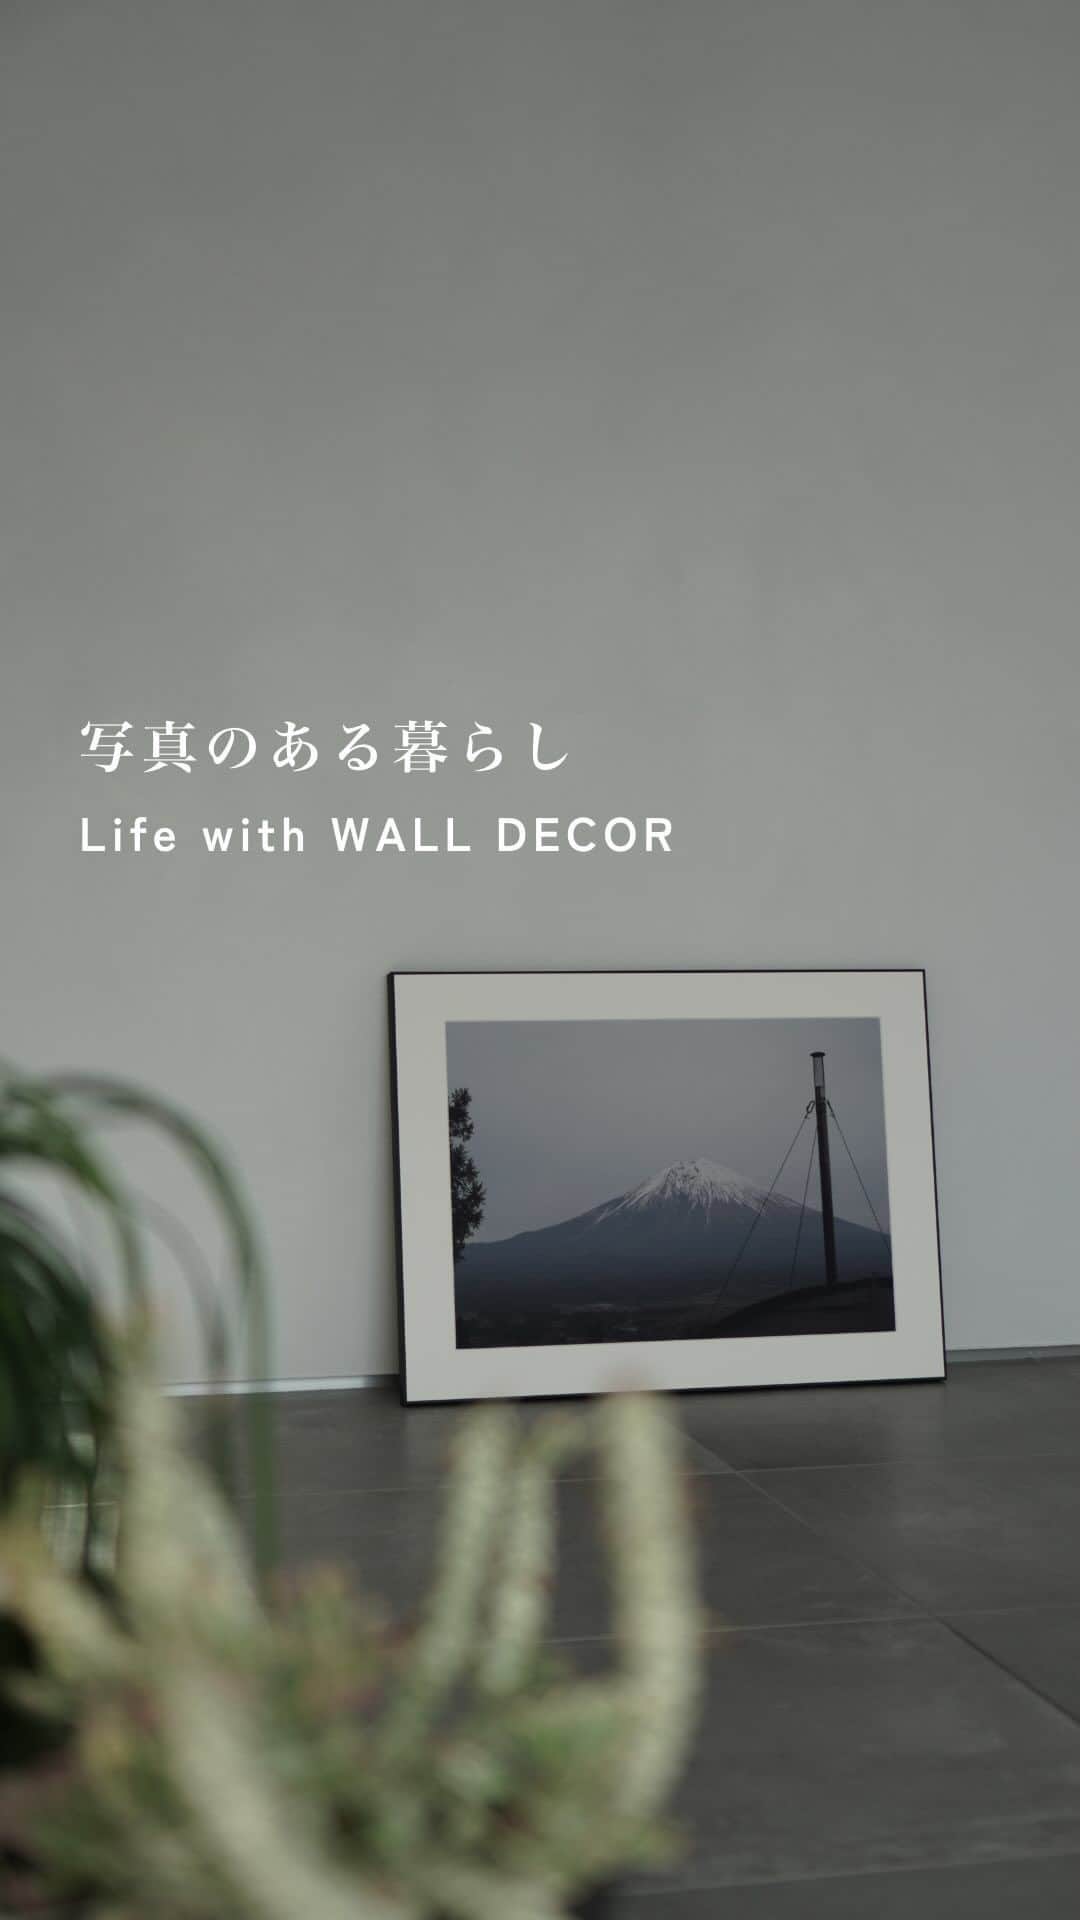 WALL DECOR (ウォールデコ）のインスタグラム：「【写真のある暮らし】  兵庫県に住むデザイナー・@neutral_house_さんのご自宅。 ものが少なく余白が印象的な空間は「内で外を感じる」がテーマだそう。  「自然素材が好きなので植物だけではなく、 石や木などを取り入れ、触感や質感にこだわっています。 これから次第に好みが変わることも視野に、 全体は何にでも合うグレーの空間にしました」  そんな@neutral_house_さんに 好きな写真をパネルにできる「WALL DECOR」を 制作いただきました。  いつでもどこでも動かせるようにと、 壁に立てかけて、床置きで飾られています。  ーーーーーーーーーーーーーーーーー  「長男と私の二人で彼の小学校卒業に合わせ、 卒業旅行として富士山を見に行った時の写真です。  普段データで眺めている写真が 額装されて届いた時の嬉しさがありました。  自分で撮った写真は、現像しても アルバムにしまっていましたが、 「思い出」をインテリアとして飾る というのはとても良いなと感じました。  ただ長男と私の二人だけの思い出なので、 家族みんなでの写真も必要ですね（笑）」  ーーーーーーーーーーーーーーーーー  写真をパネルにできる「WALL DECOR」 ギャラリータイプ A2サイズ相当 ディープマット印刷  comment 「印画紙はディープマットを選んだのですが、ギャラリータイプの縁のマットな質感と馴染んでいてかなり気に入っています。リビングなど明るい空間においても反射が無く、インテリアとして見た時もかなり良いポイントでした。」  #ウォールデコ #お部屋に飾りたい1枚 #植物のある暮らし #カメラのある生活 #注文住宅 #写真好きな人とつながりたい #カメラ好きと繋がりたい #カメラ好きな人と繋がりたい #インテリア好き #インテリアデザイン　 #新築注文住宅  #部屋づくり#植物のある生活 #インテリア小物 #家づくりアイデア #シンプルインテリア #インテリア好きな人と繋がりたい #新築戸建 #グリーンのある生活 #グリーンのある暮らし #インテリアを楽しむ #インテリア好きと繋がりたい #カメラ好きな人とつながりたい #家づくりノート 　#写真のある生活 #インテリアスタイリング #中庭のある暮らし #フォトパネル #ビンテージ家具」